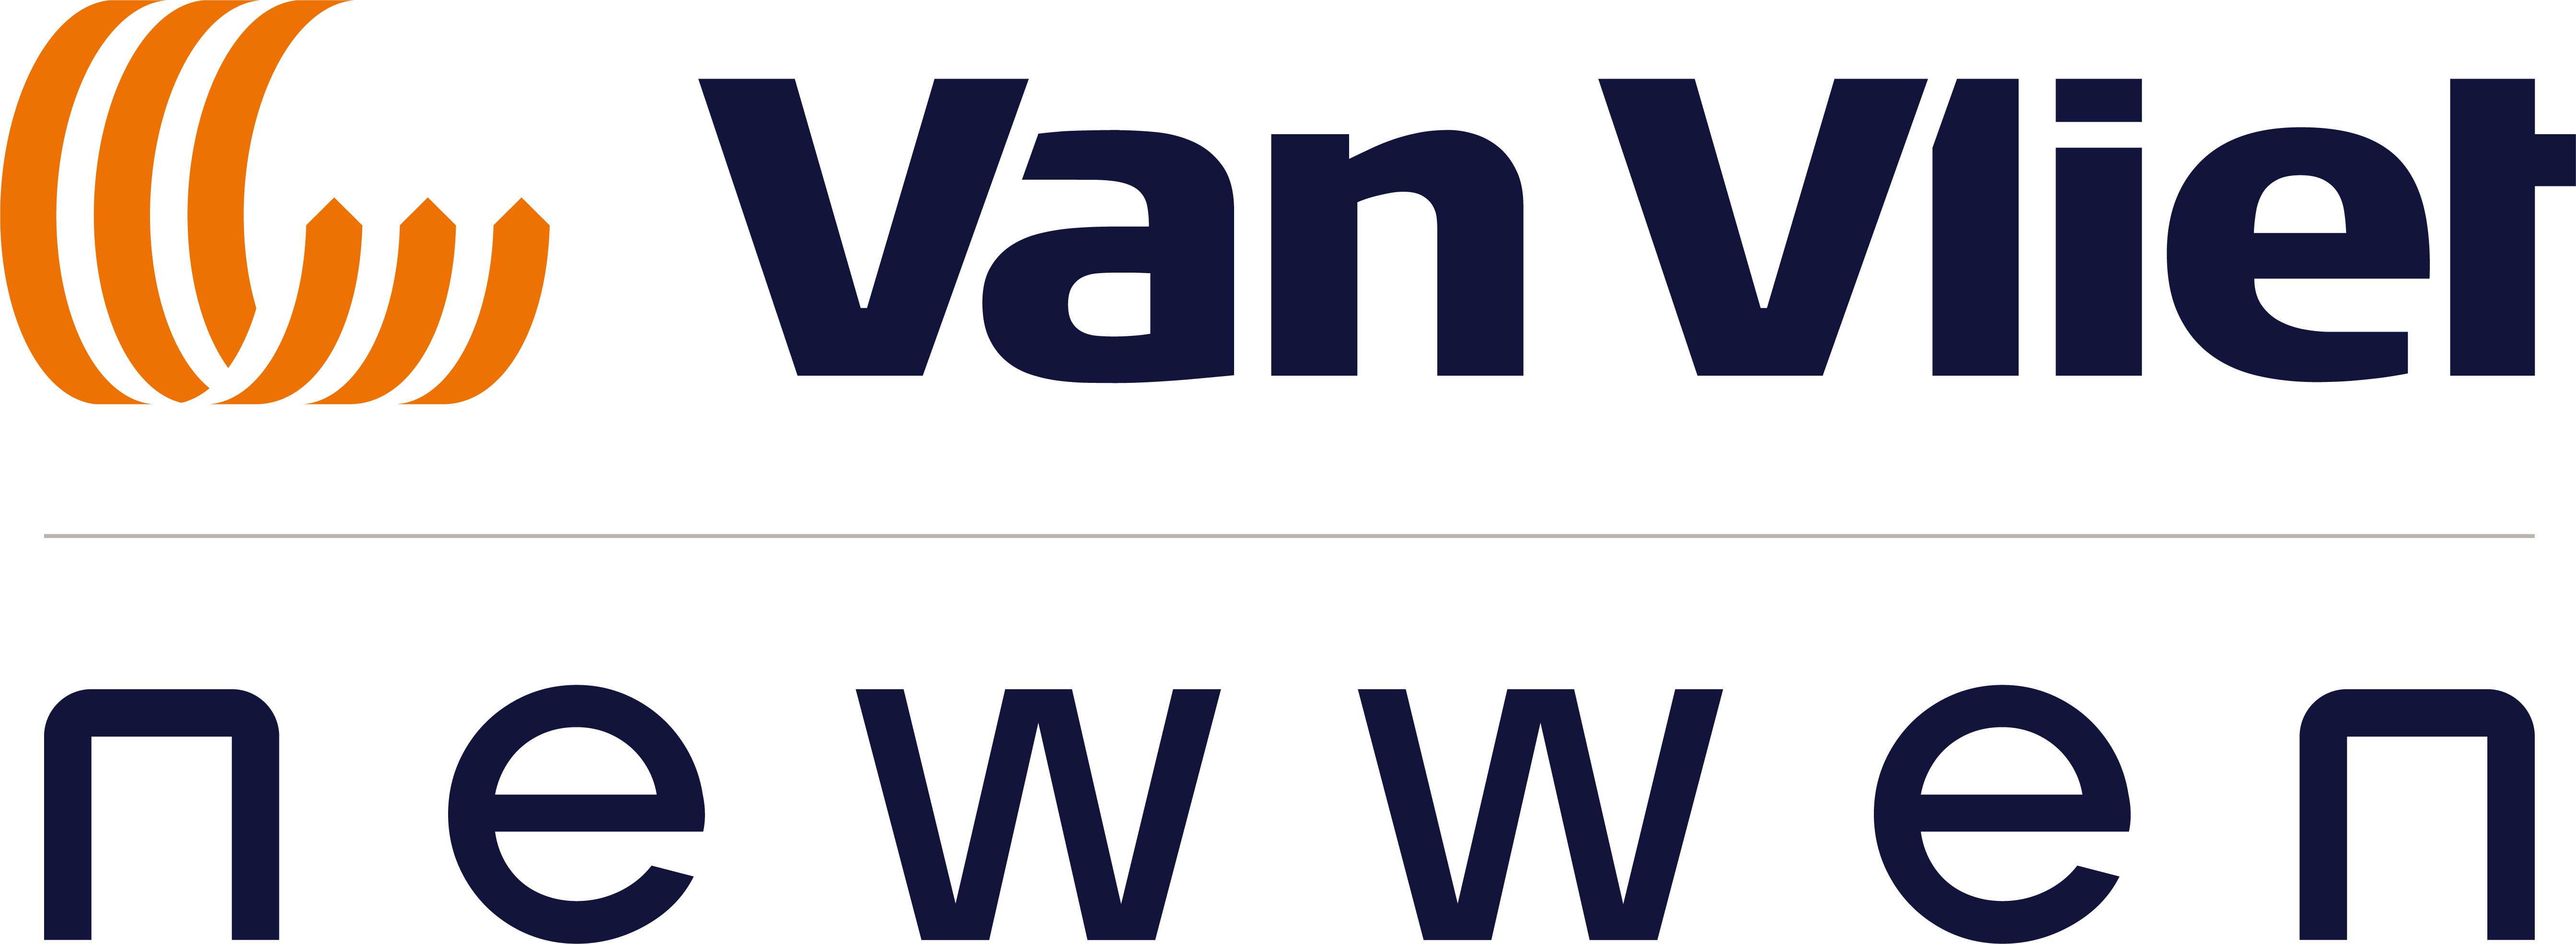 Newwen | Van Vliet Containers